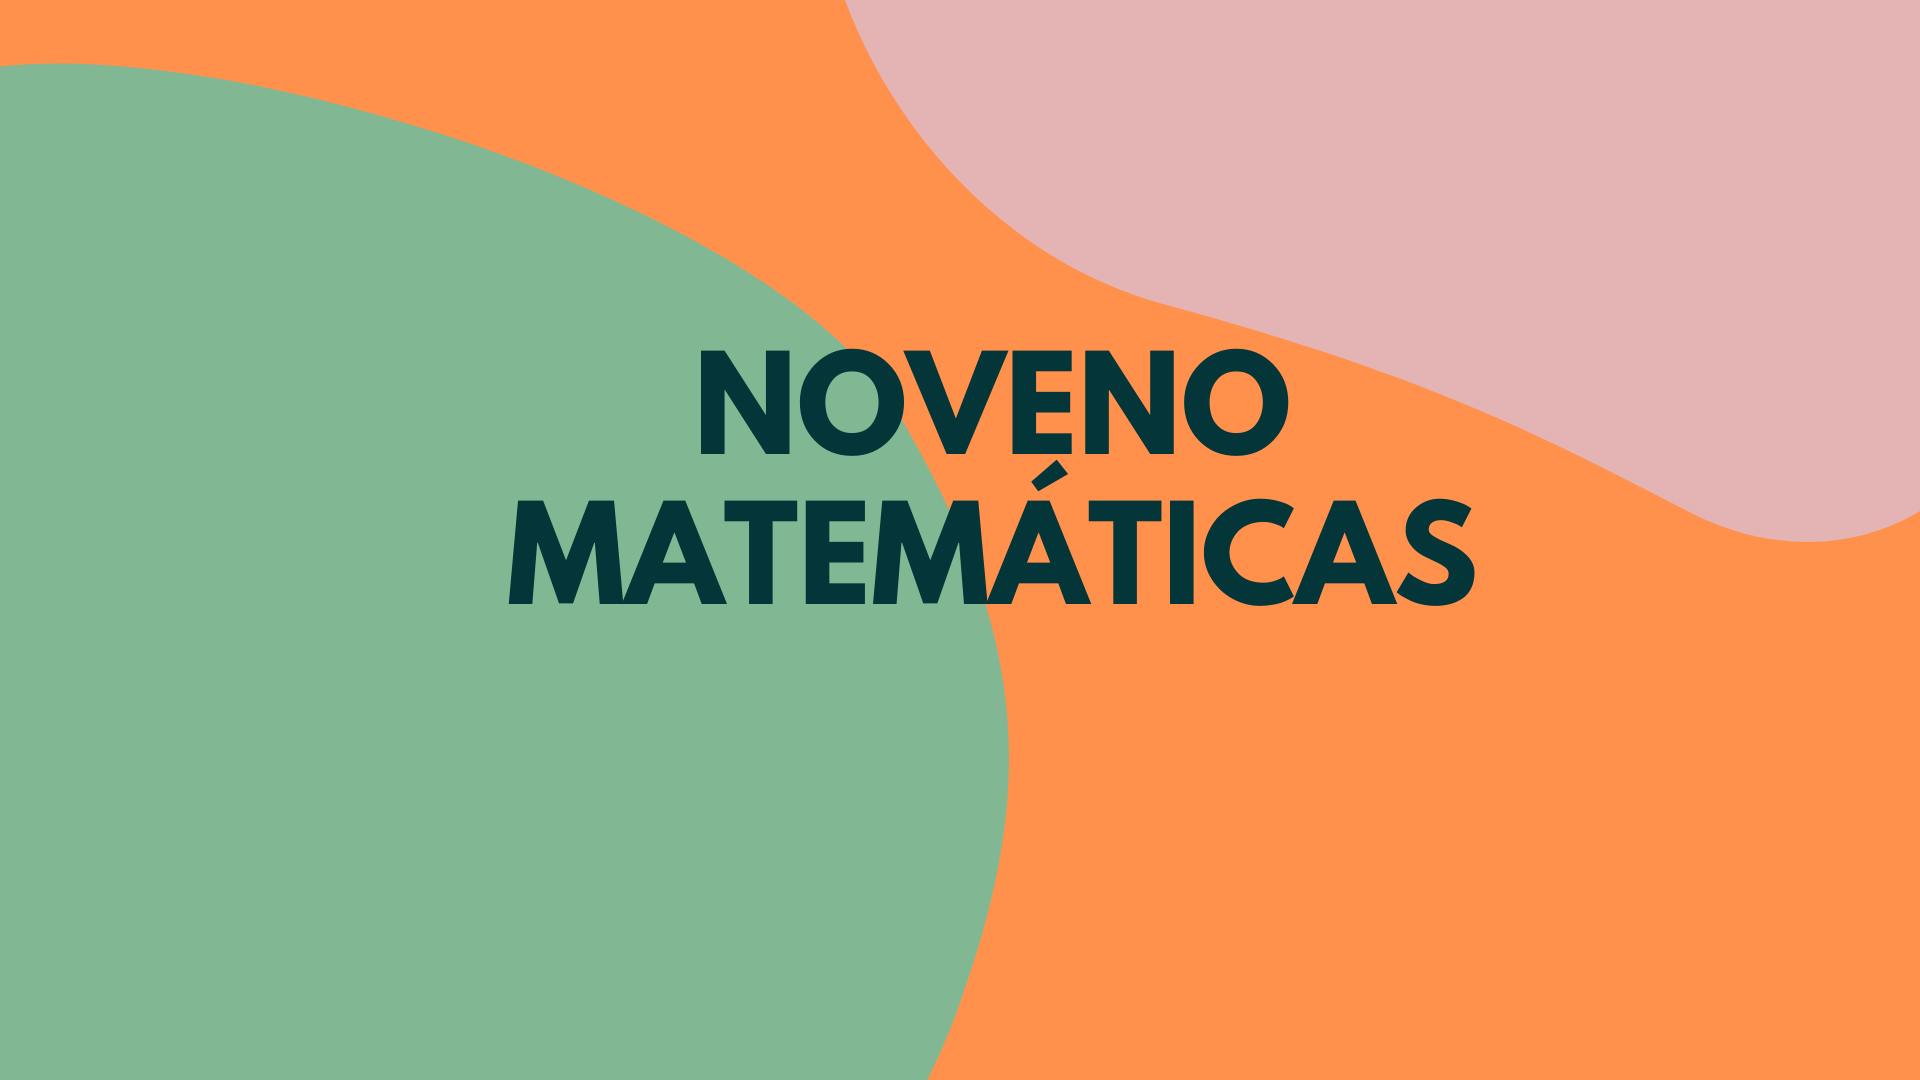 Noveno matemáticas